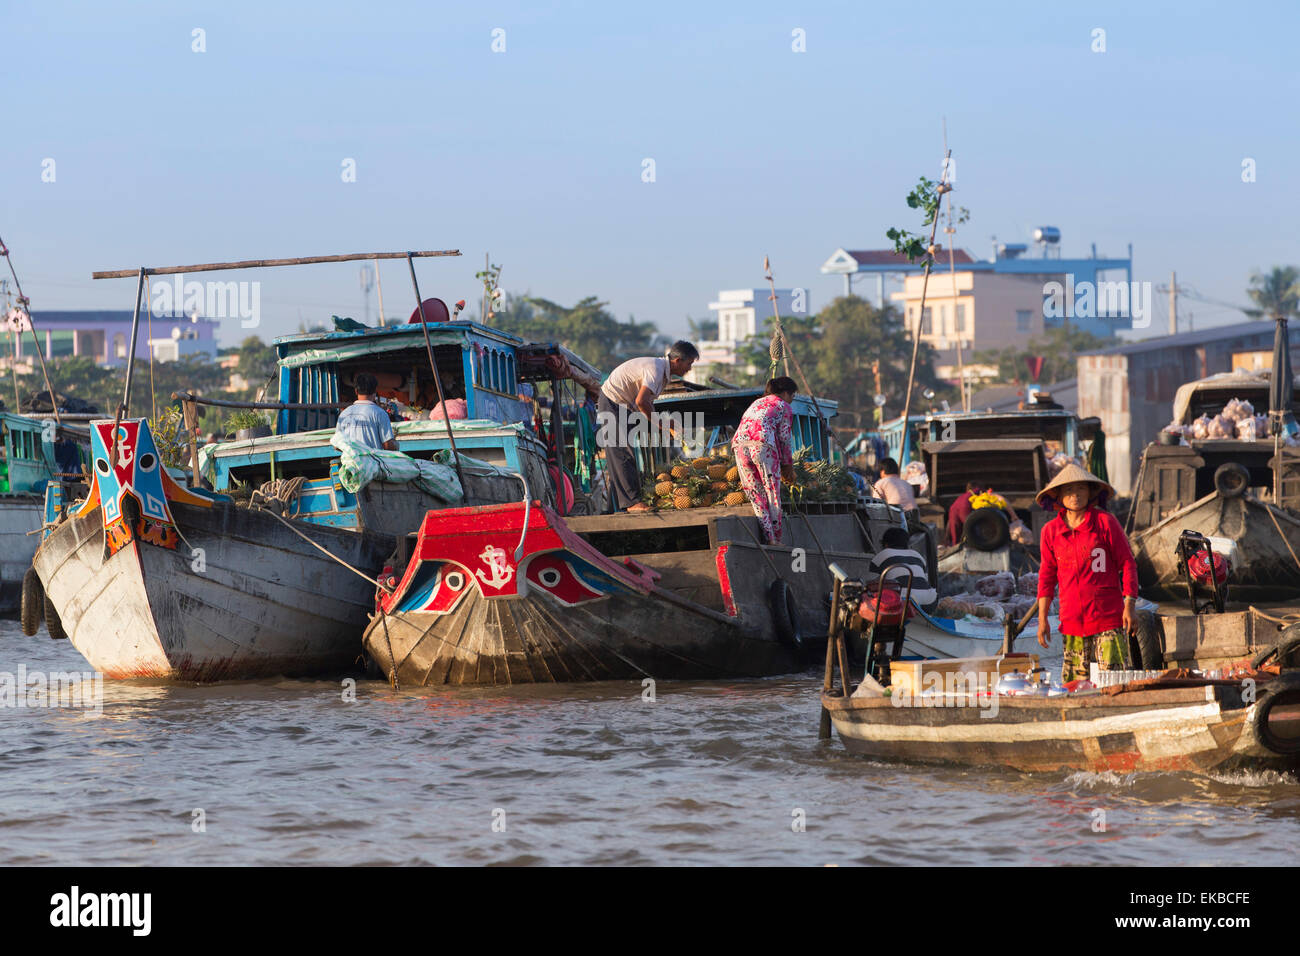 Marché flottant de Cai Rang, Can Tho, Delta du Mékong, Vietnam, Indochine, Asie du Sud-Est, l'Asie Banque D'Images